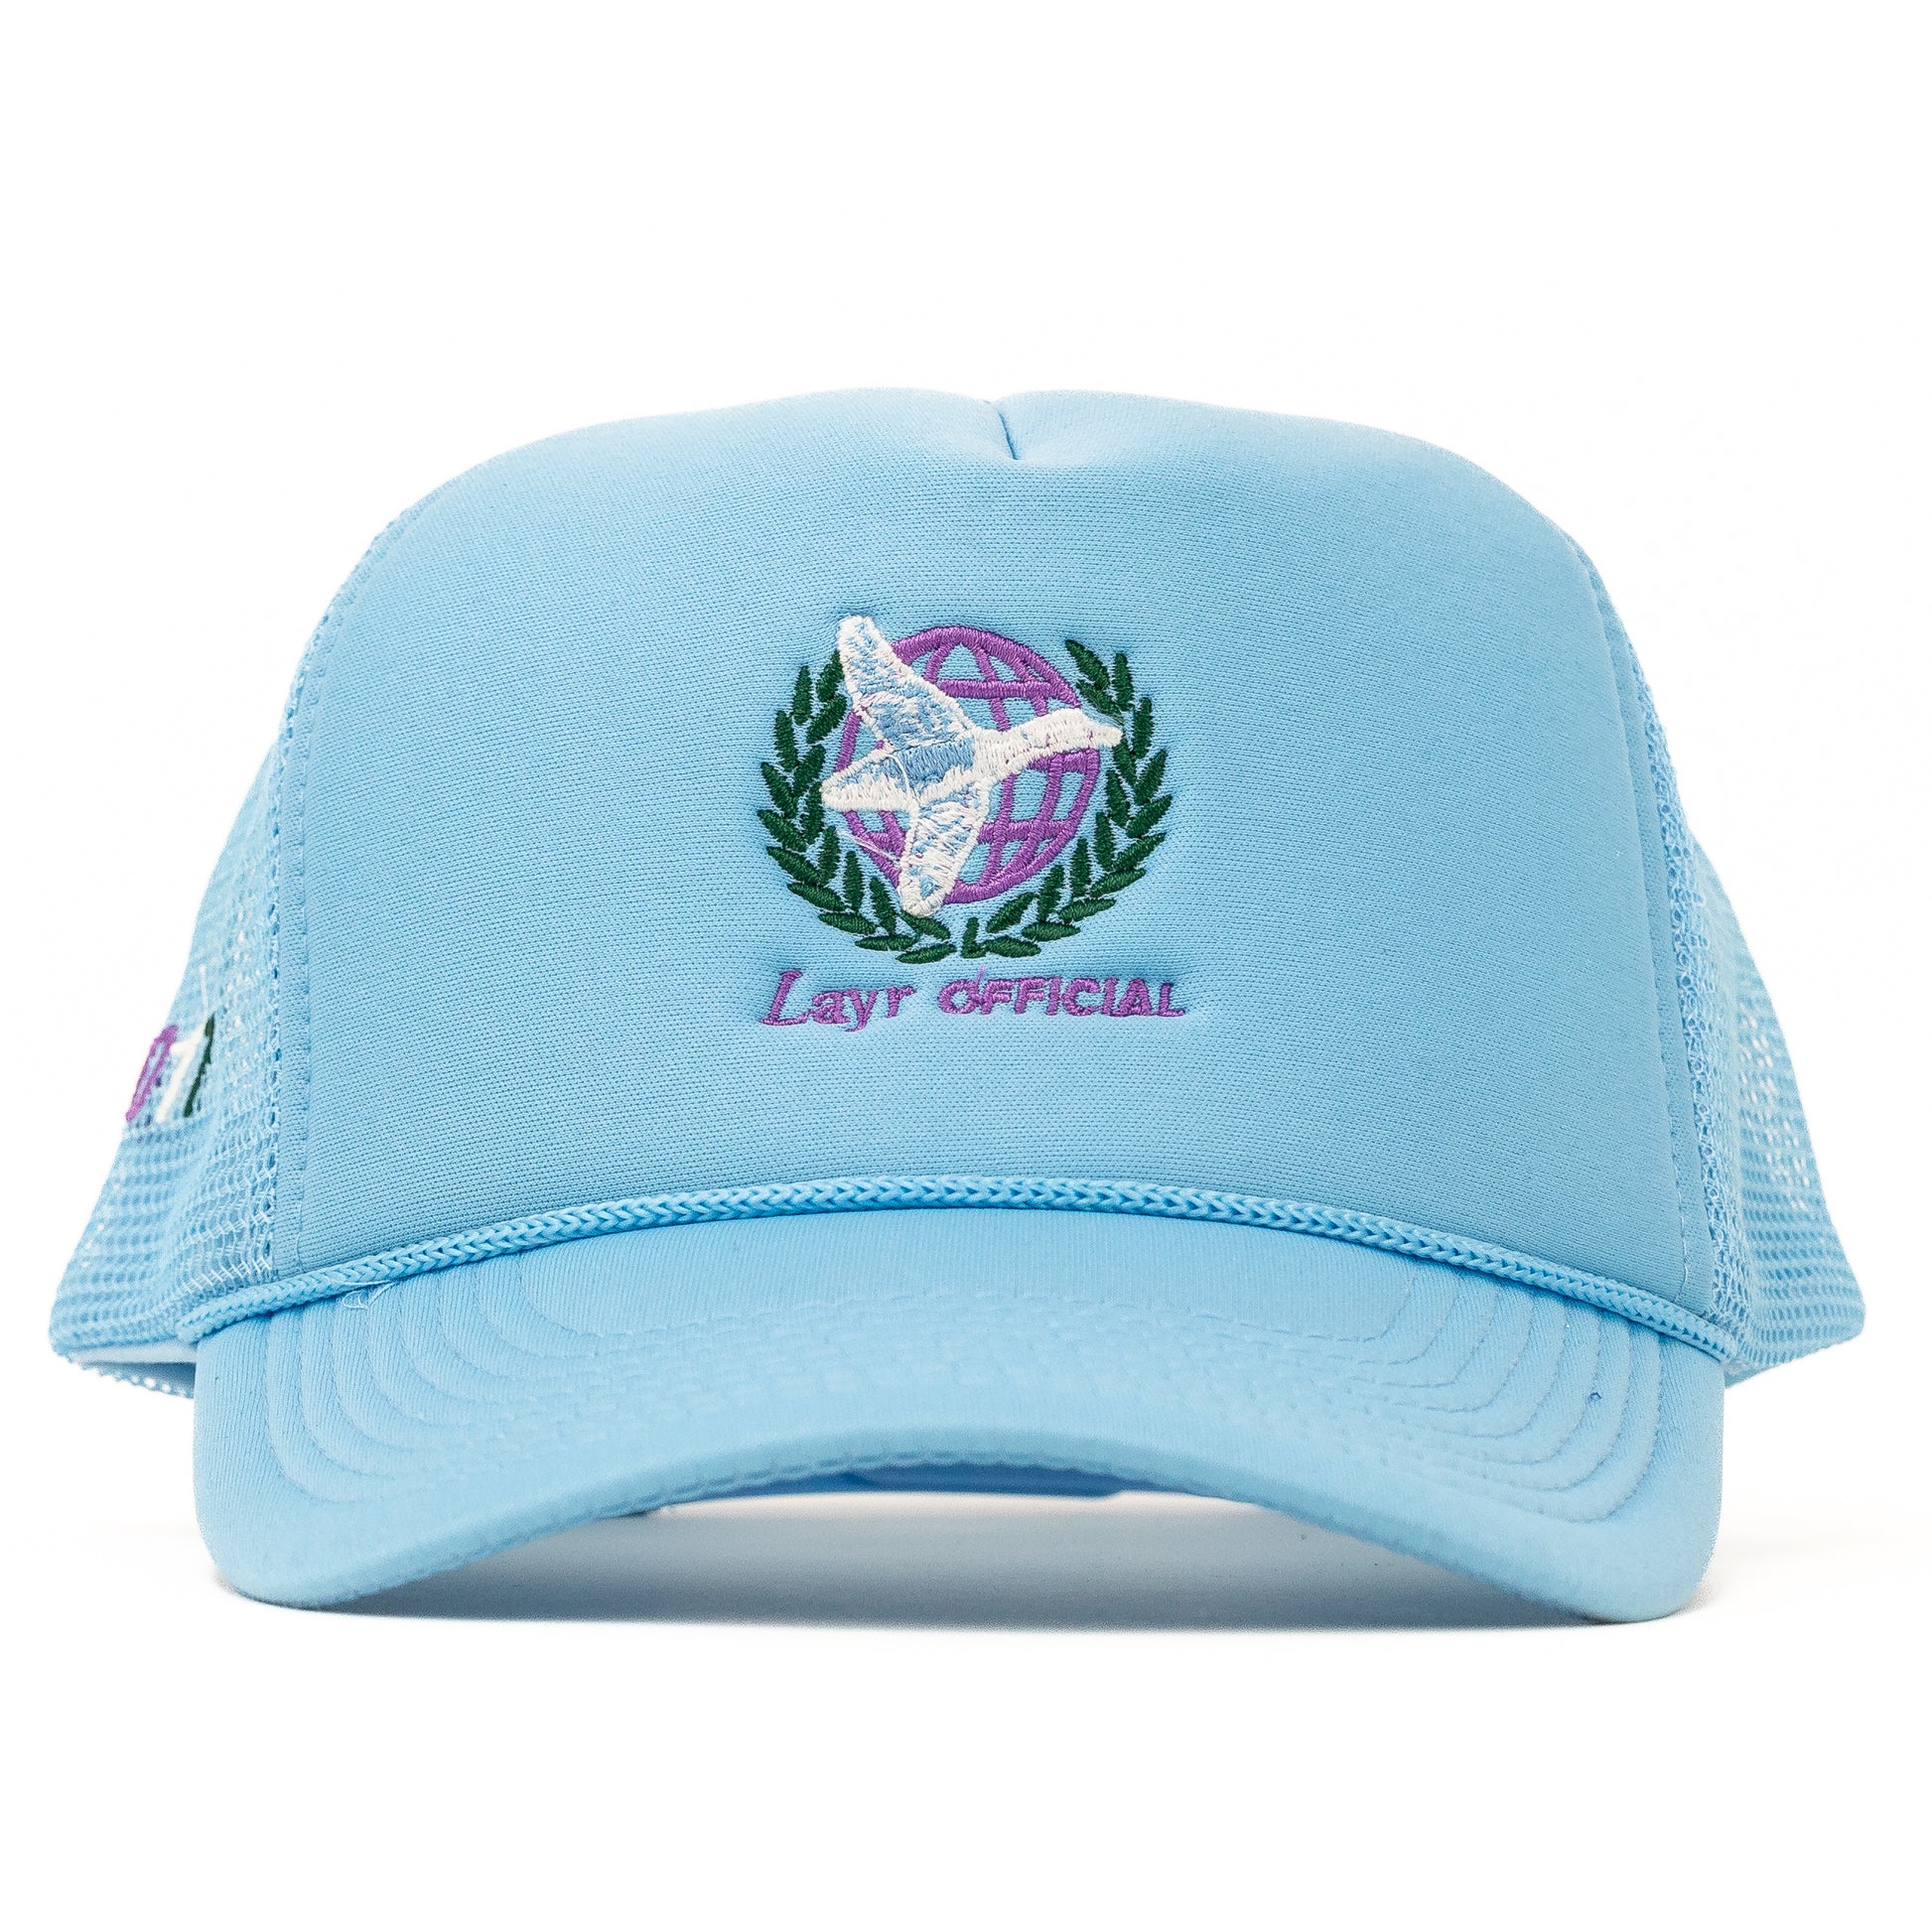 Global Duck Trucker Hat, Light Blue - Layr Official